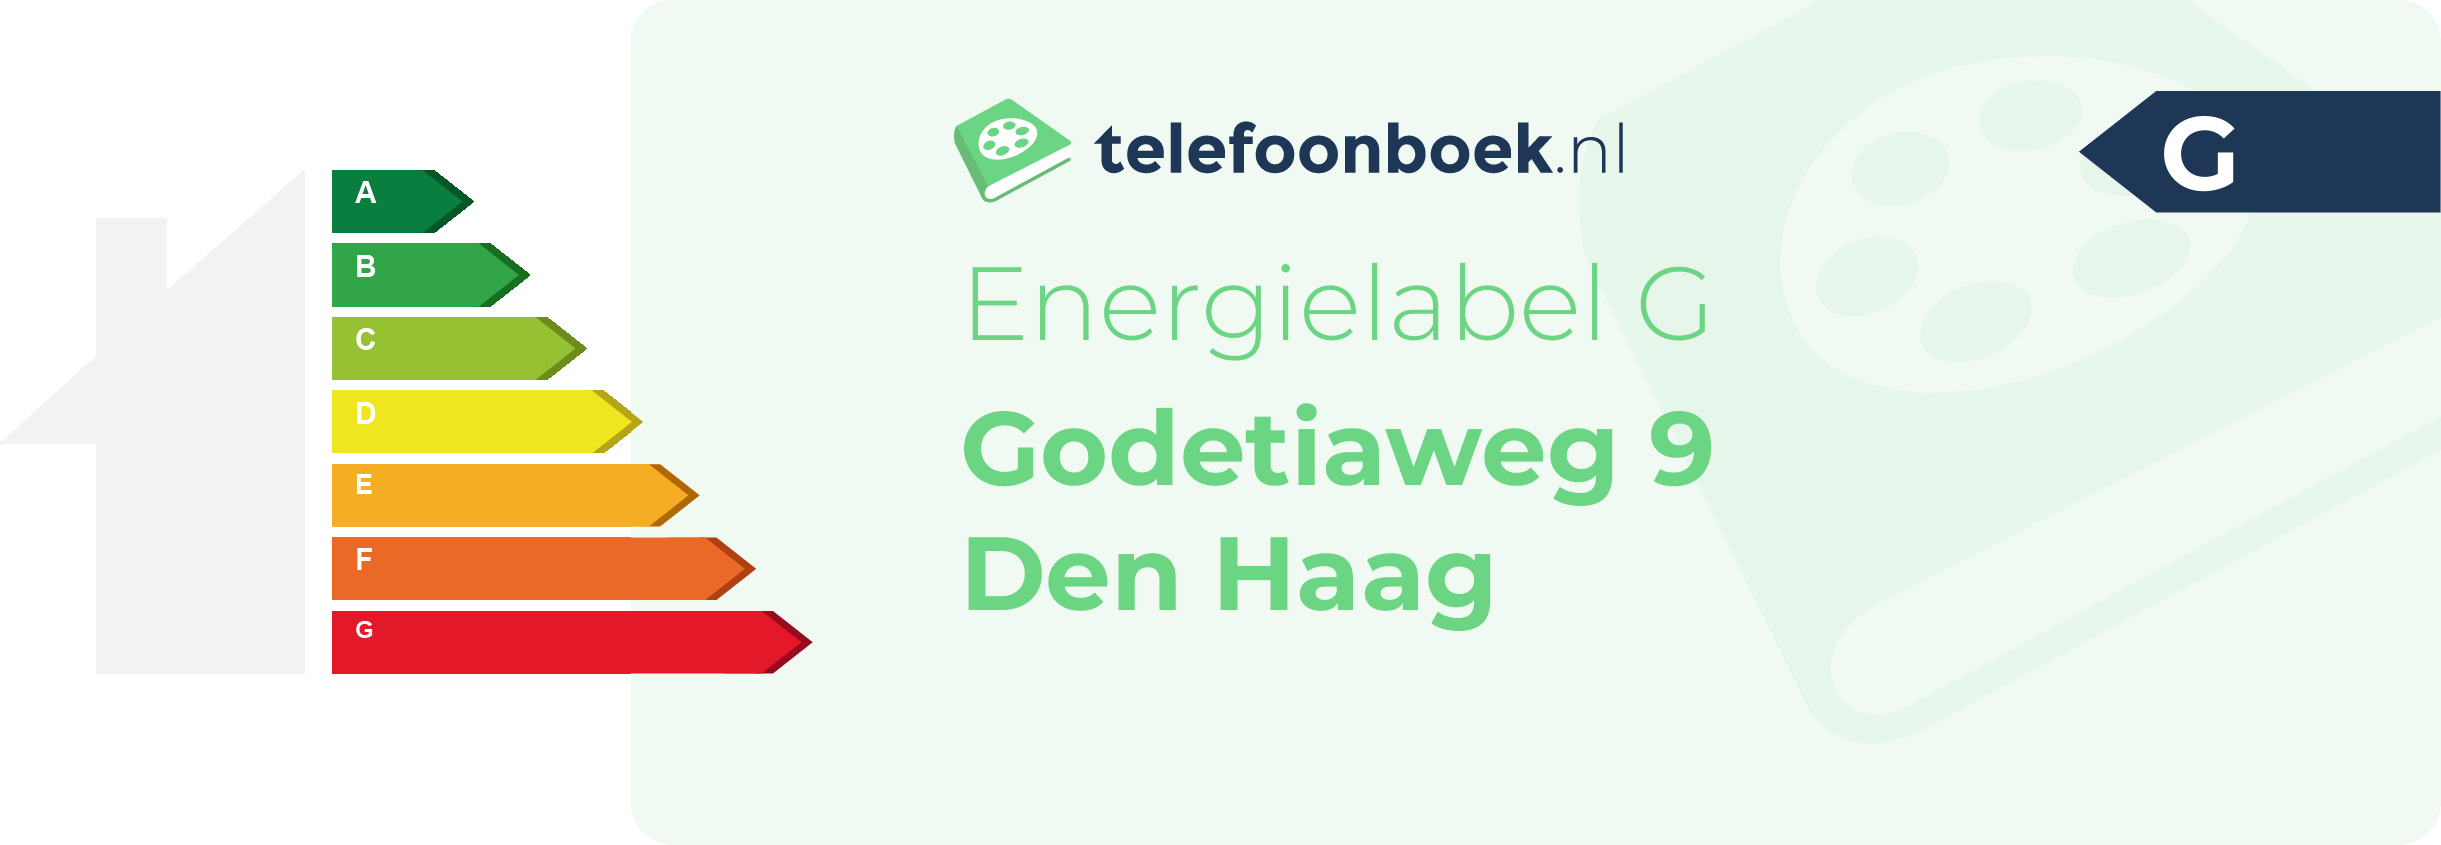 Energielabel Godetiaweg 9 Den Haag